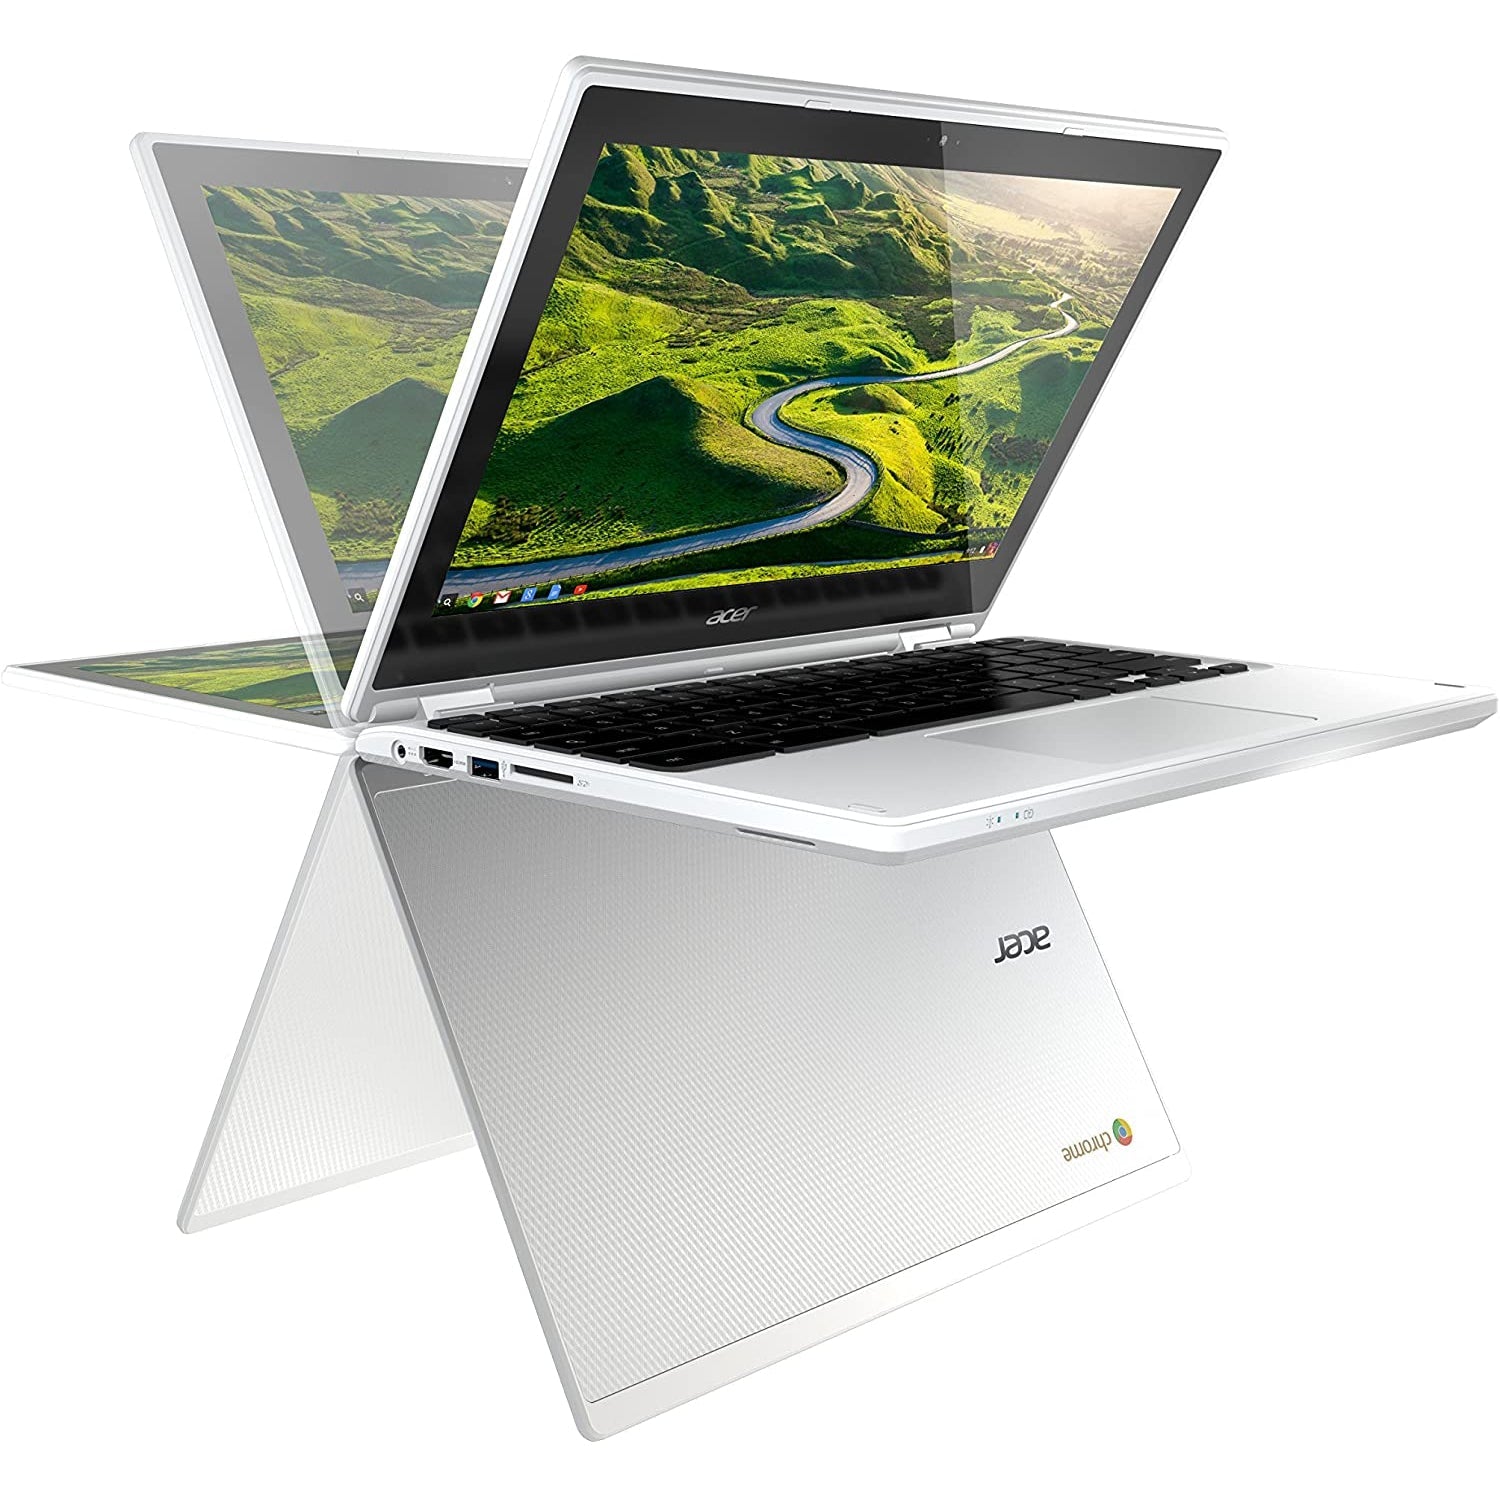 Acer CB5-132T 11.6" Laptop, Intel Celeron, 2GB RAM, 32GB eMMC, White - Refurbished Good